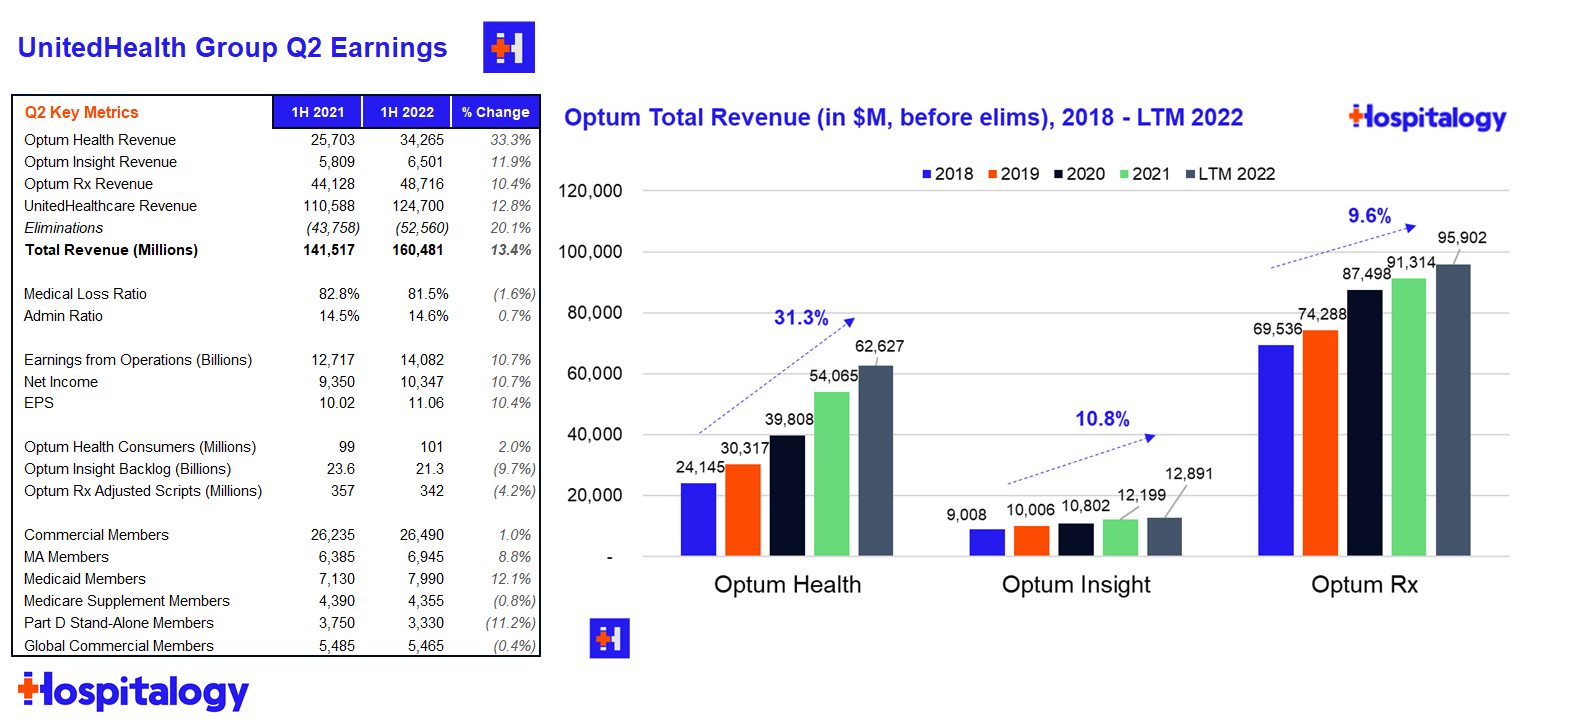 UnitedHealth Group Q2 earnings analysis Hospitalogy 2022